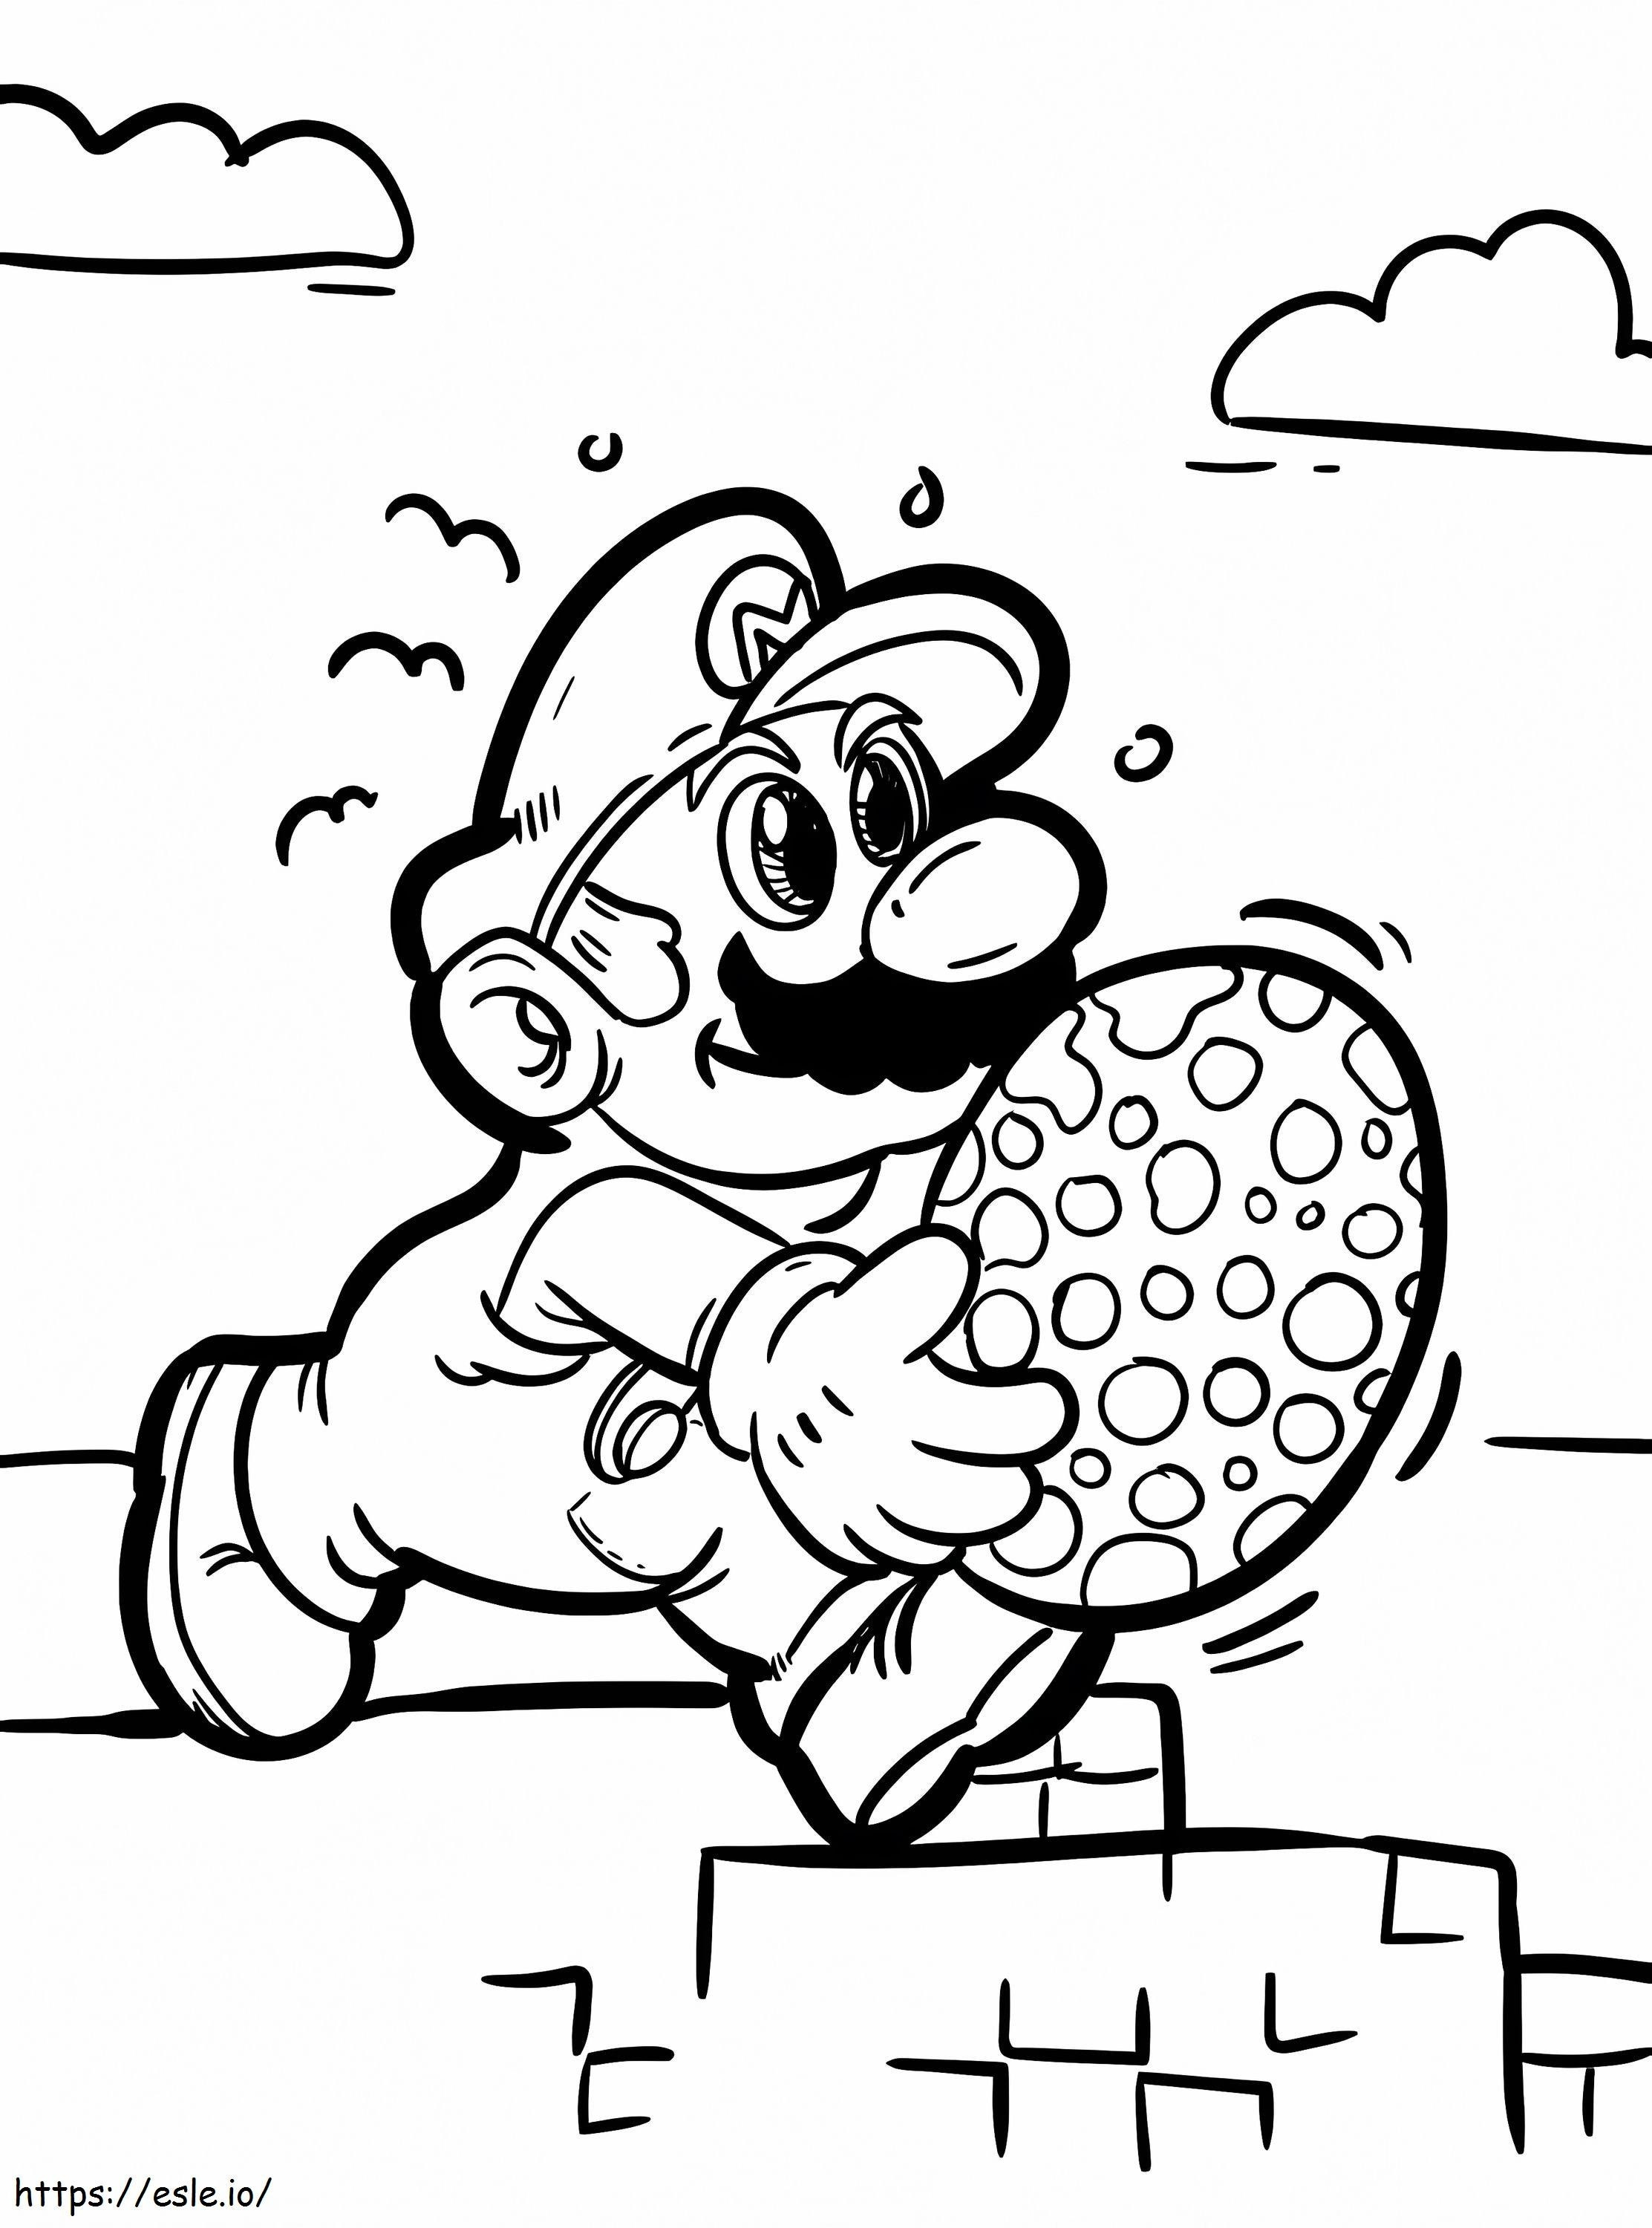 Mario ve Yumurta boyama